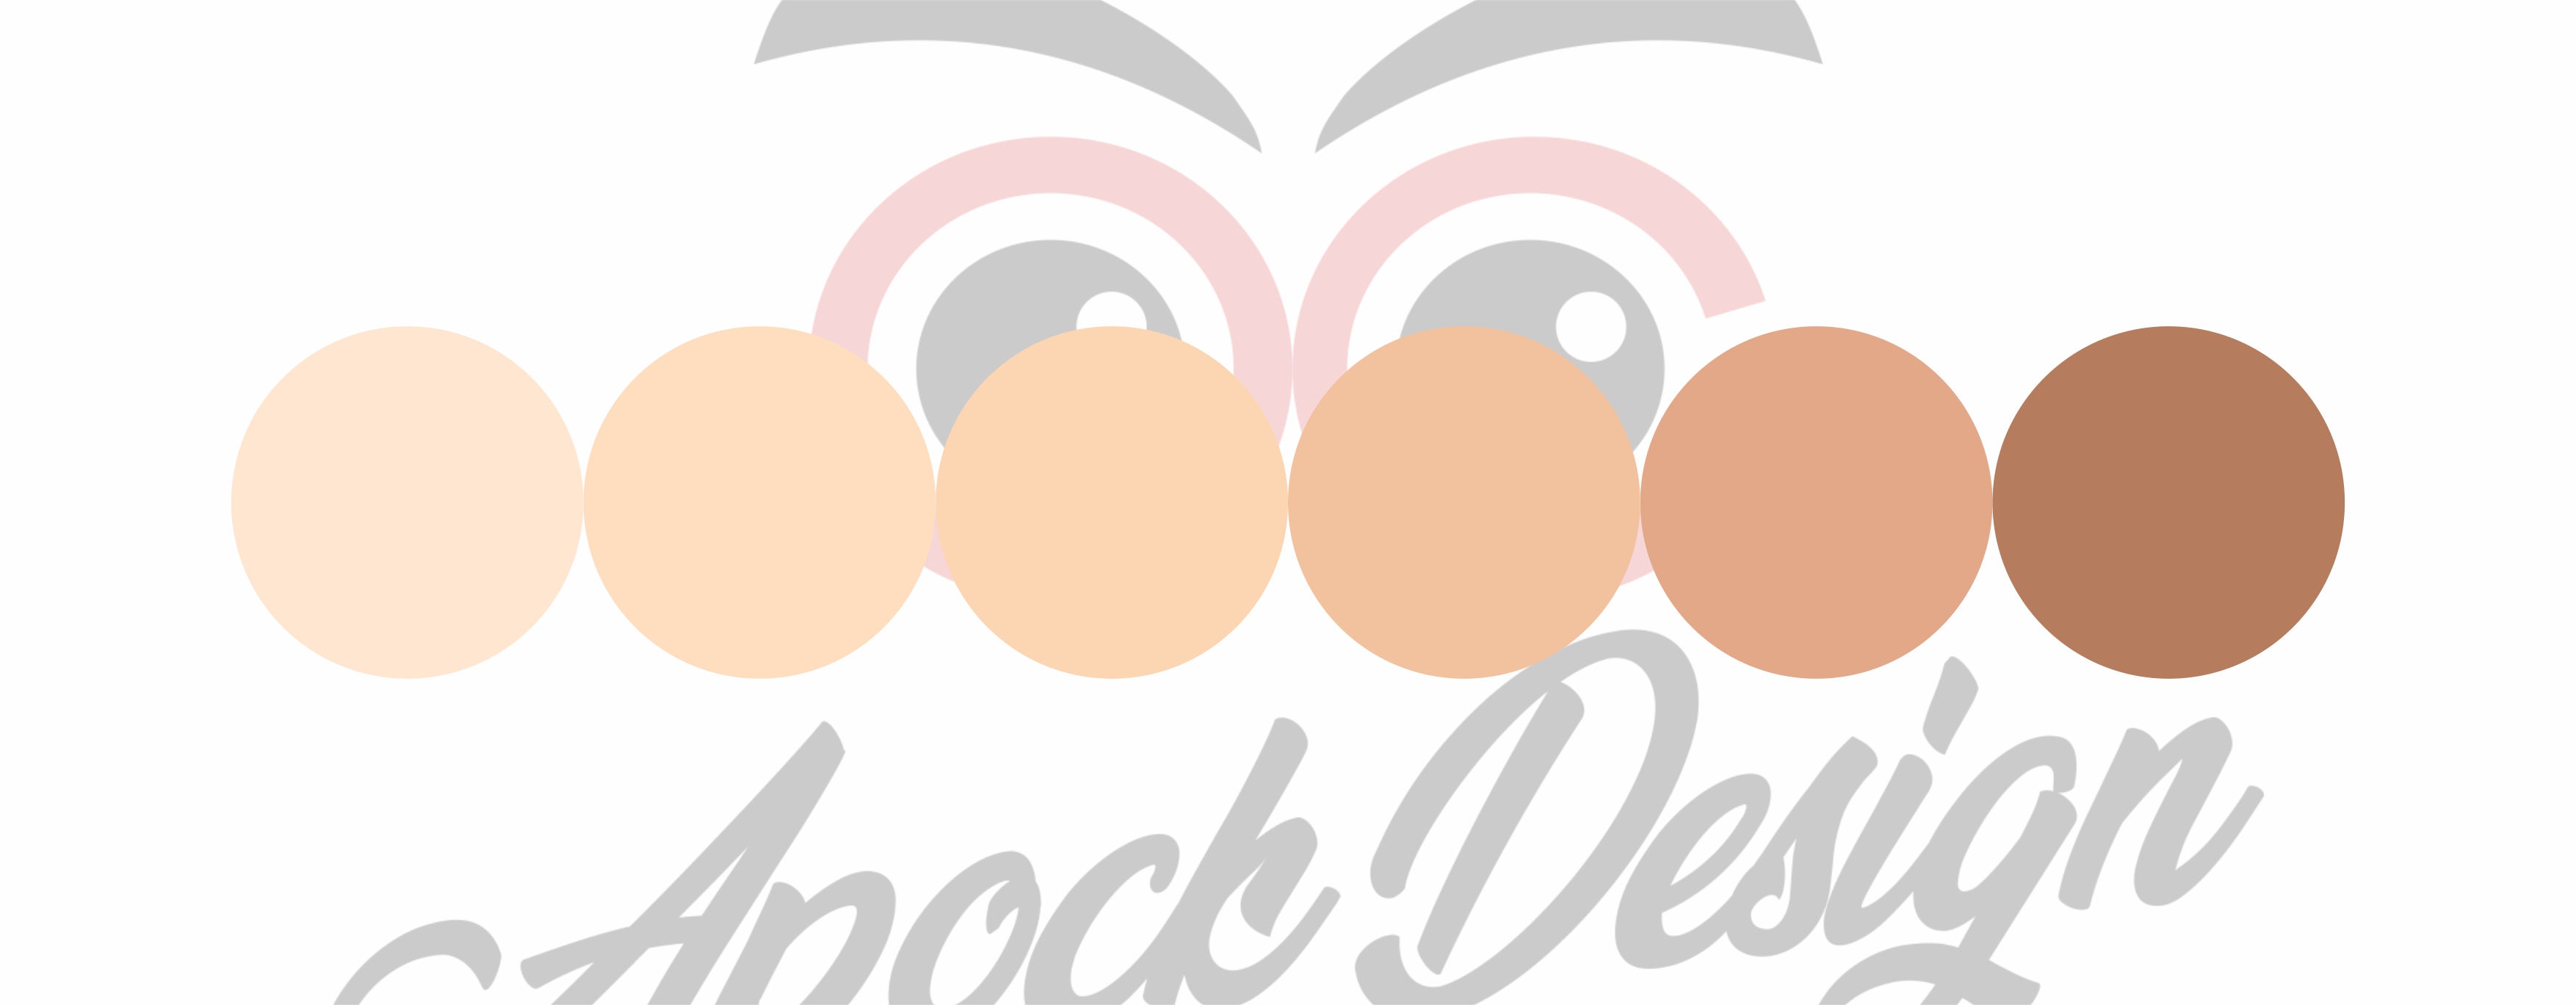 Download Palet Warna Vector Art Apock Design